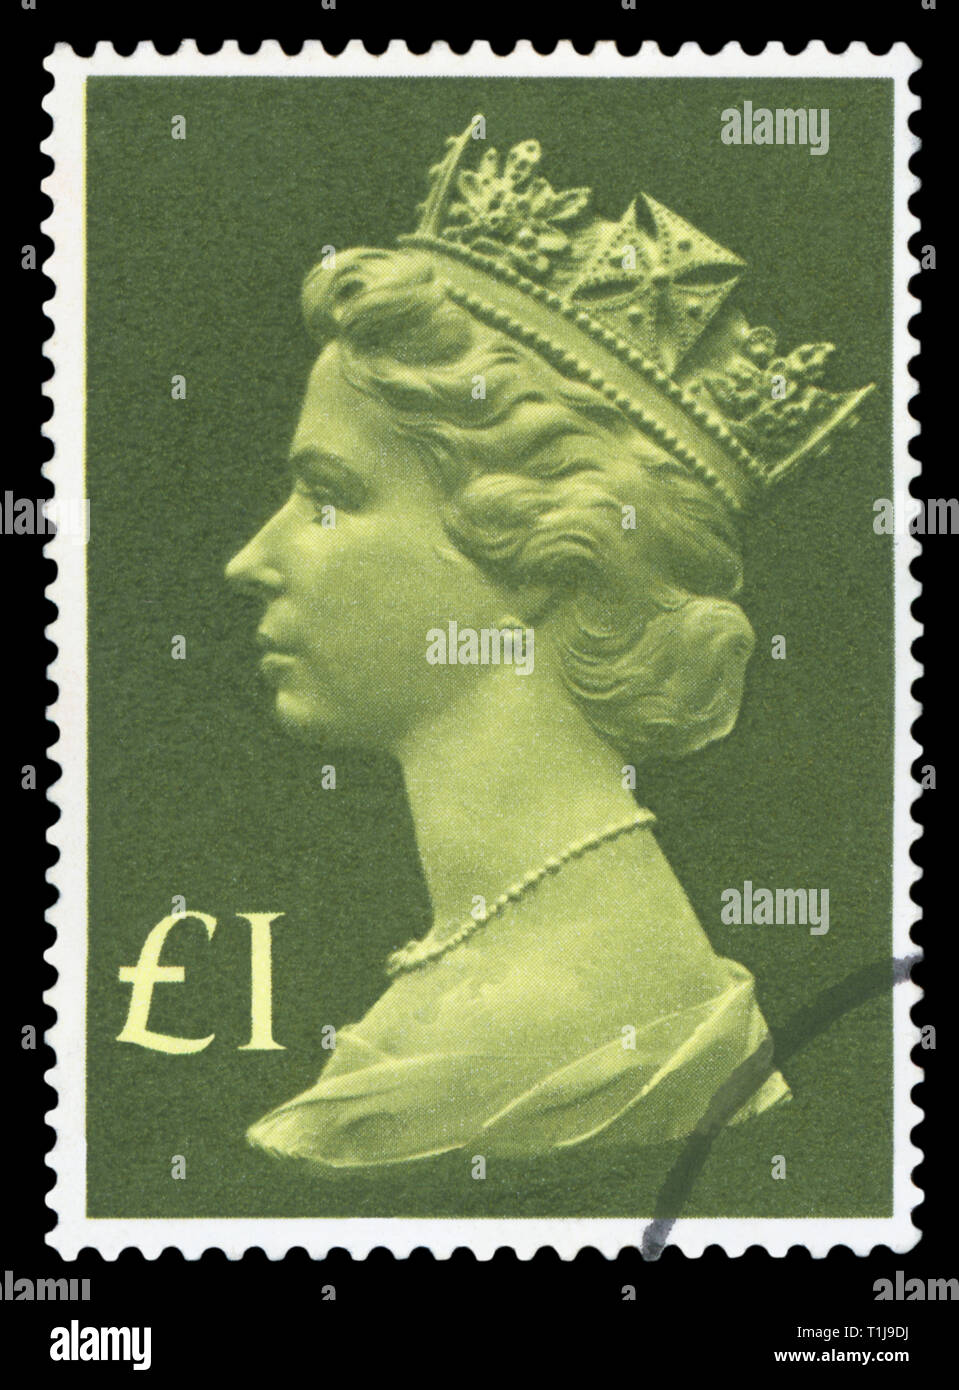 Royaume-uni - circa 1977 : timbre imprimé au Royaume-Uni montre la reine Elizabeth II, vers 1977. Banque D'Images